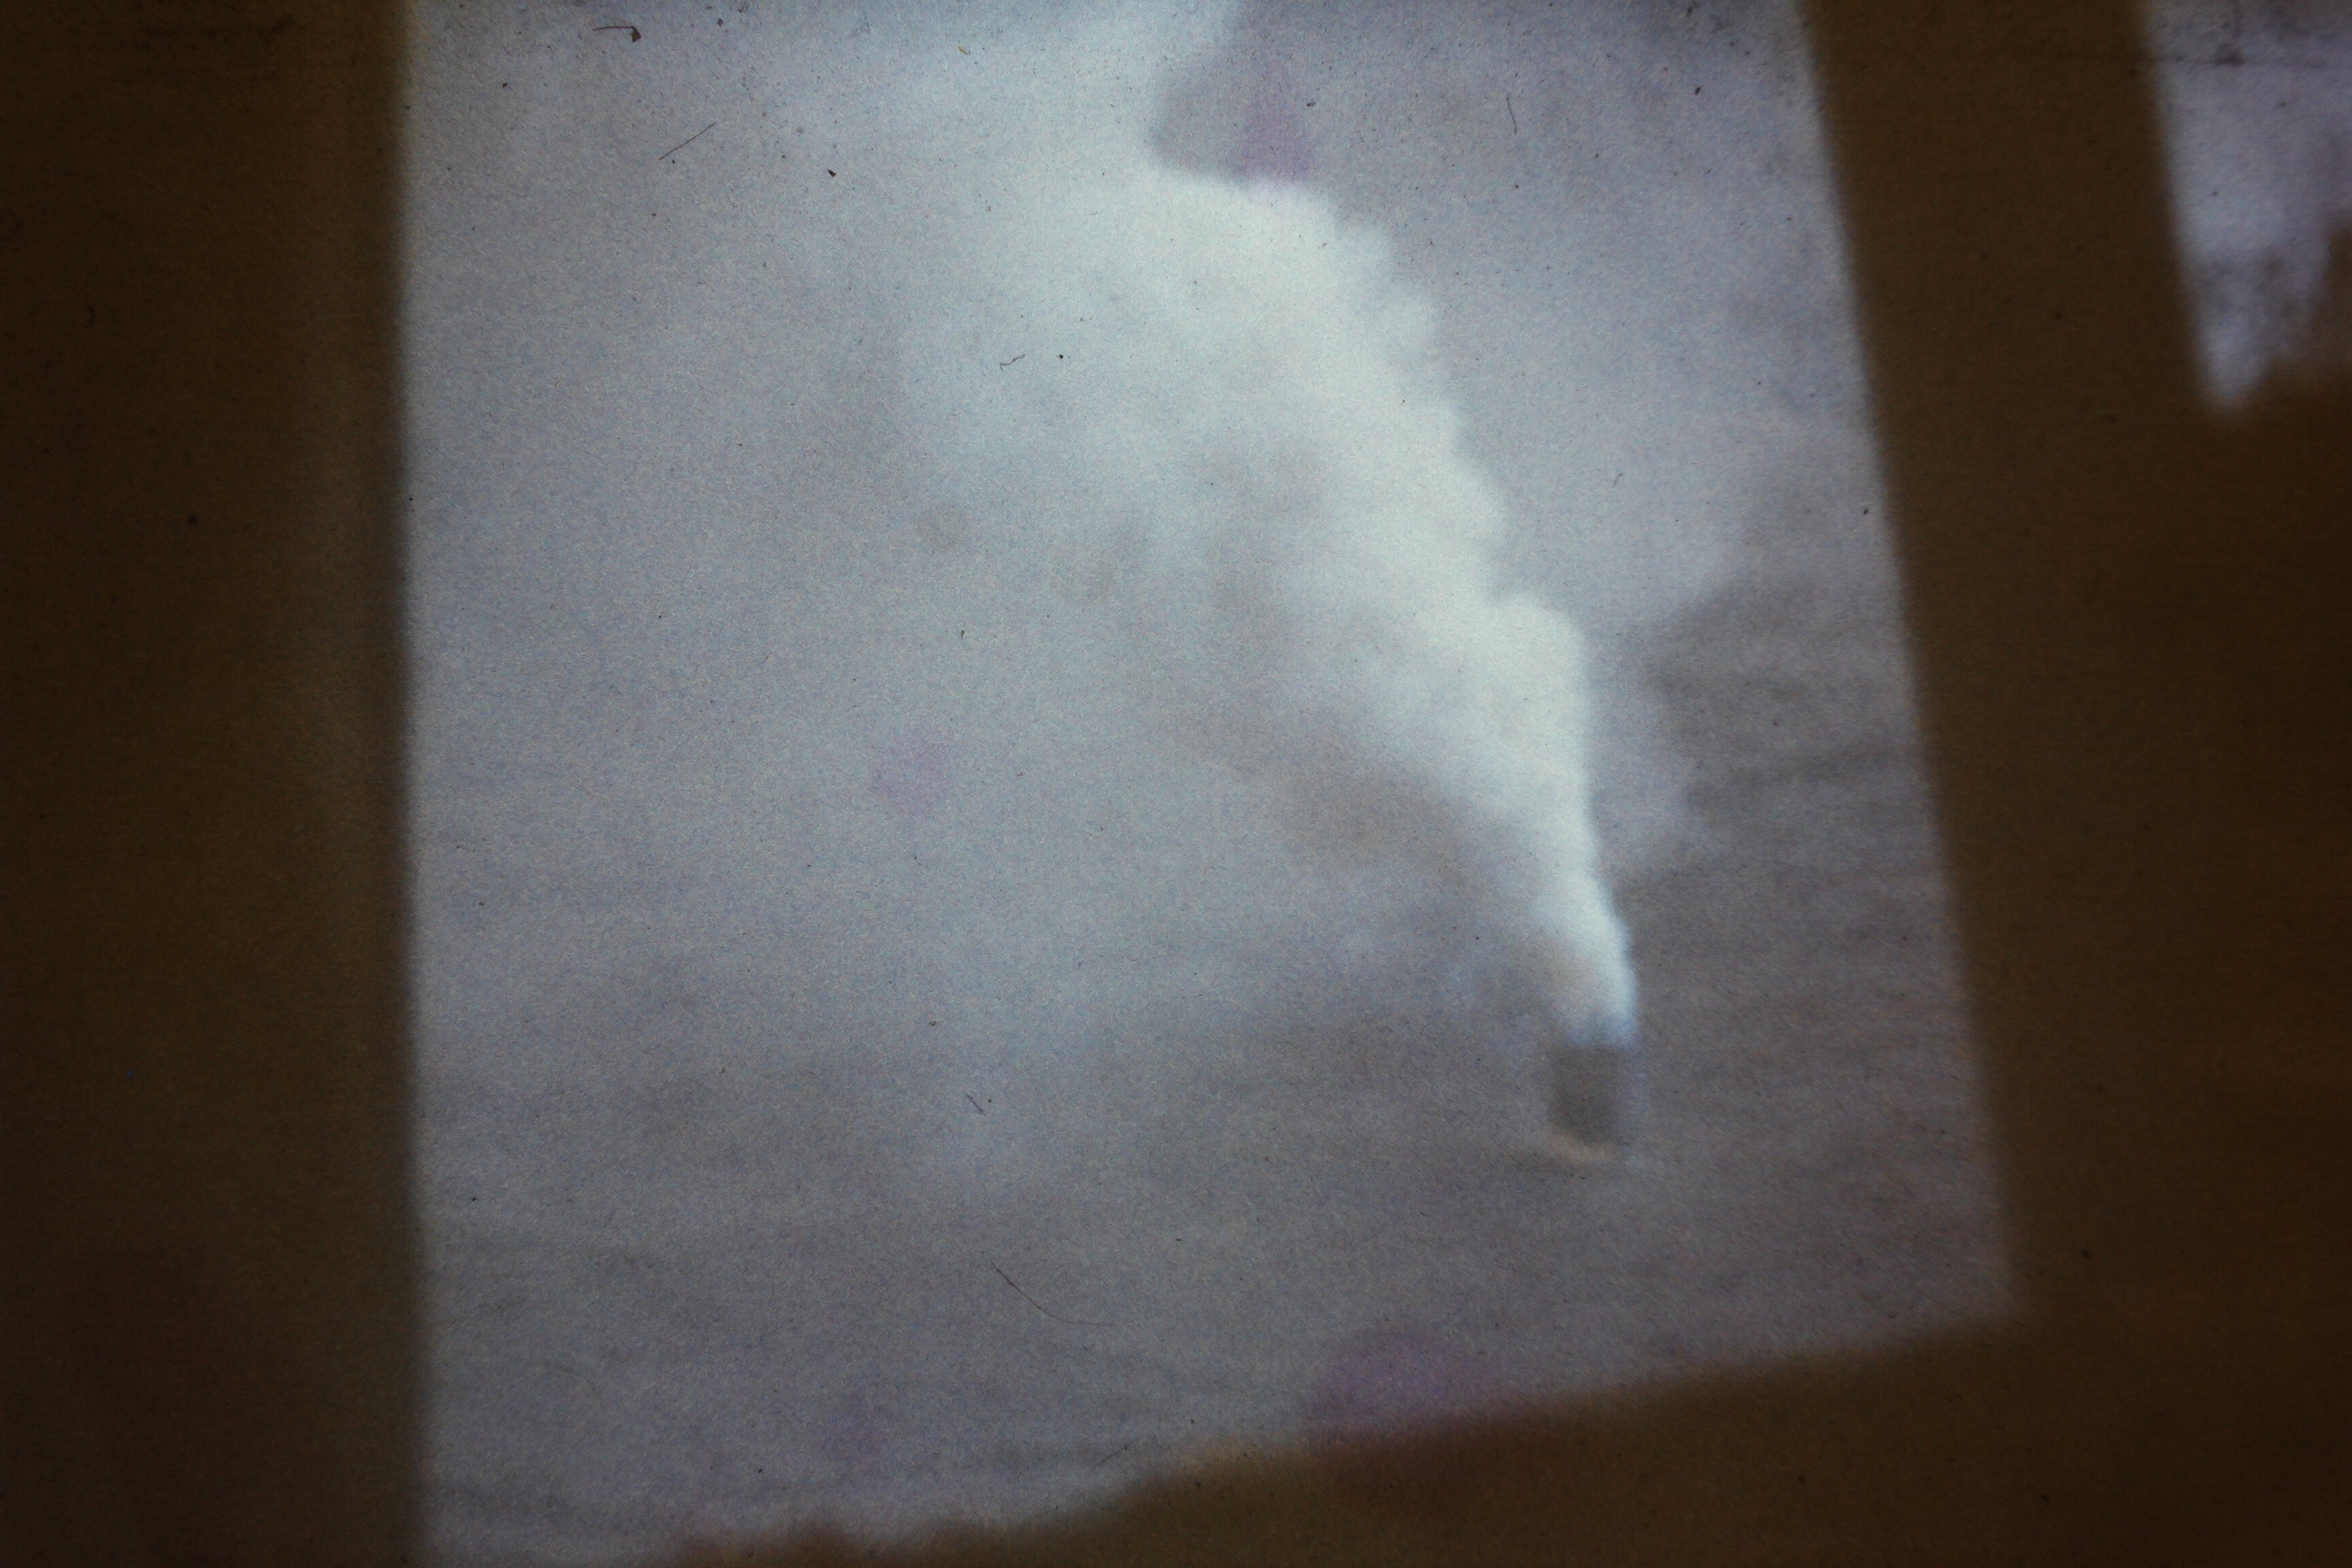 Atomschlagübung "Dosse 83": Entzündete Rauchgranate vor dem Haus der Freimarks (DDR Geschichtsmuseum im Dokumentationszentrum Perleberg CC BY-SA)